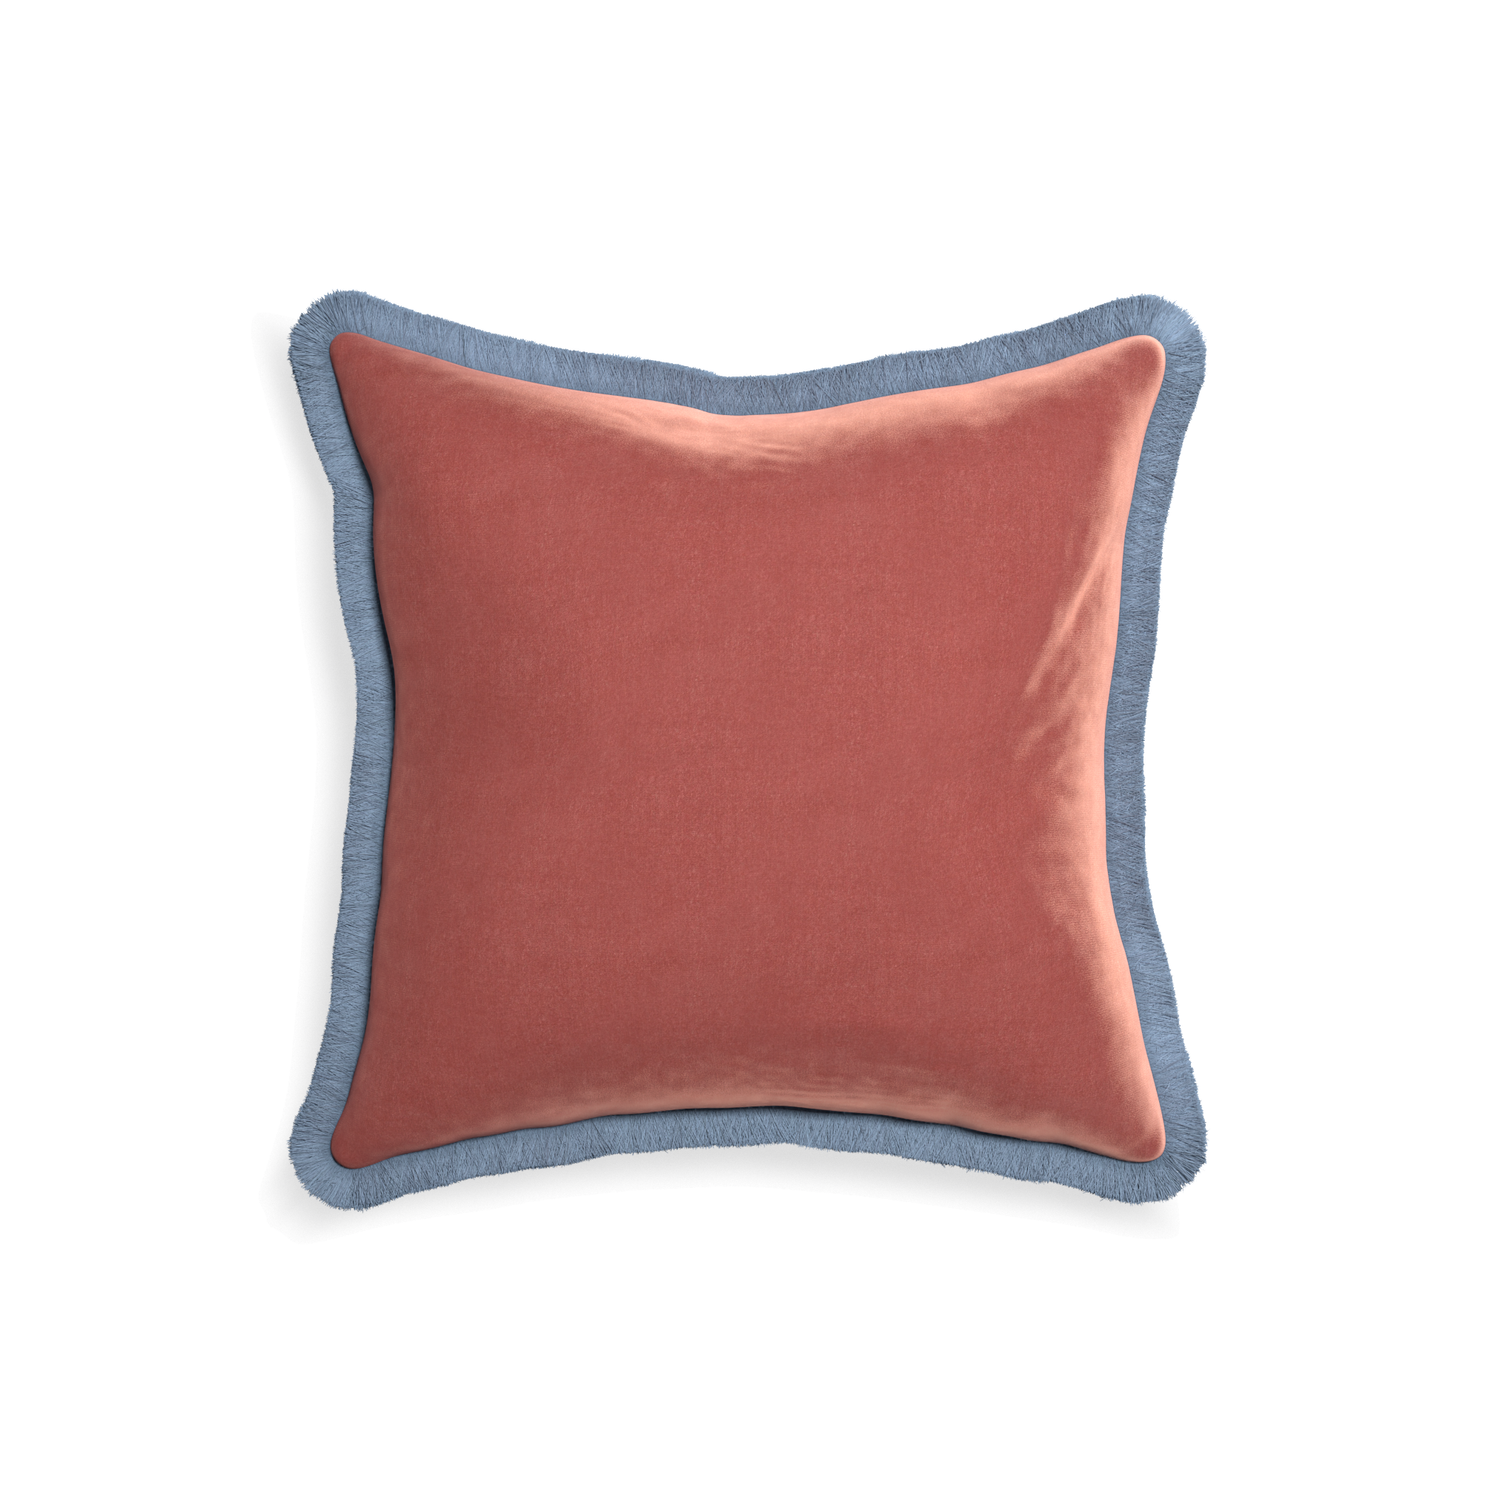 square coral velvet pillow with sky blue fringe